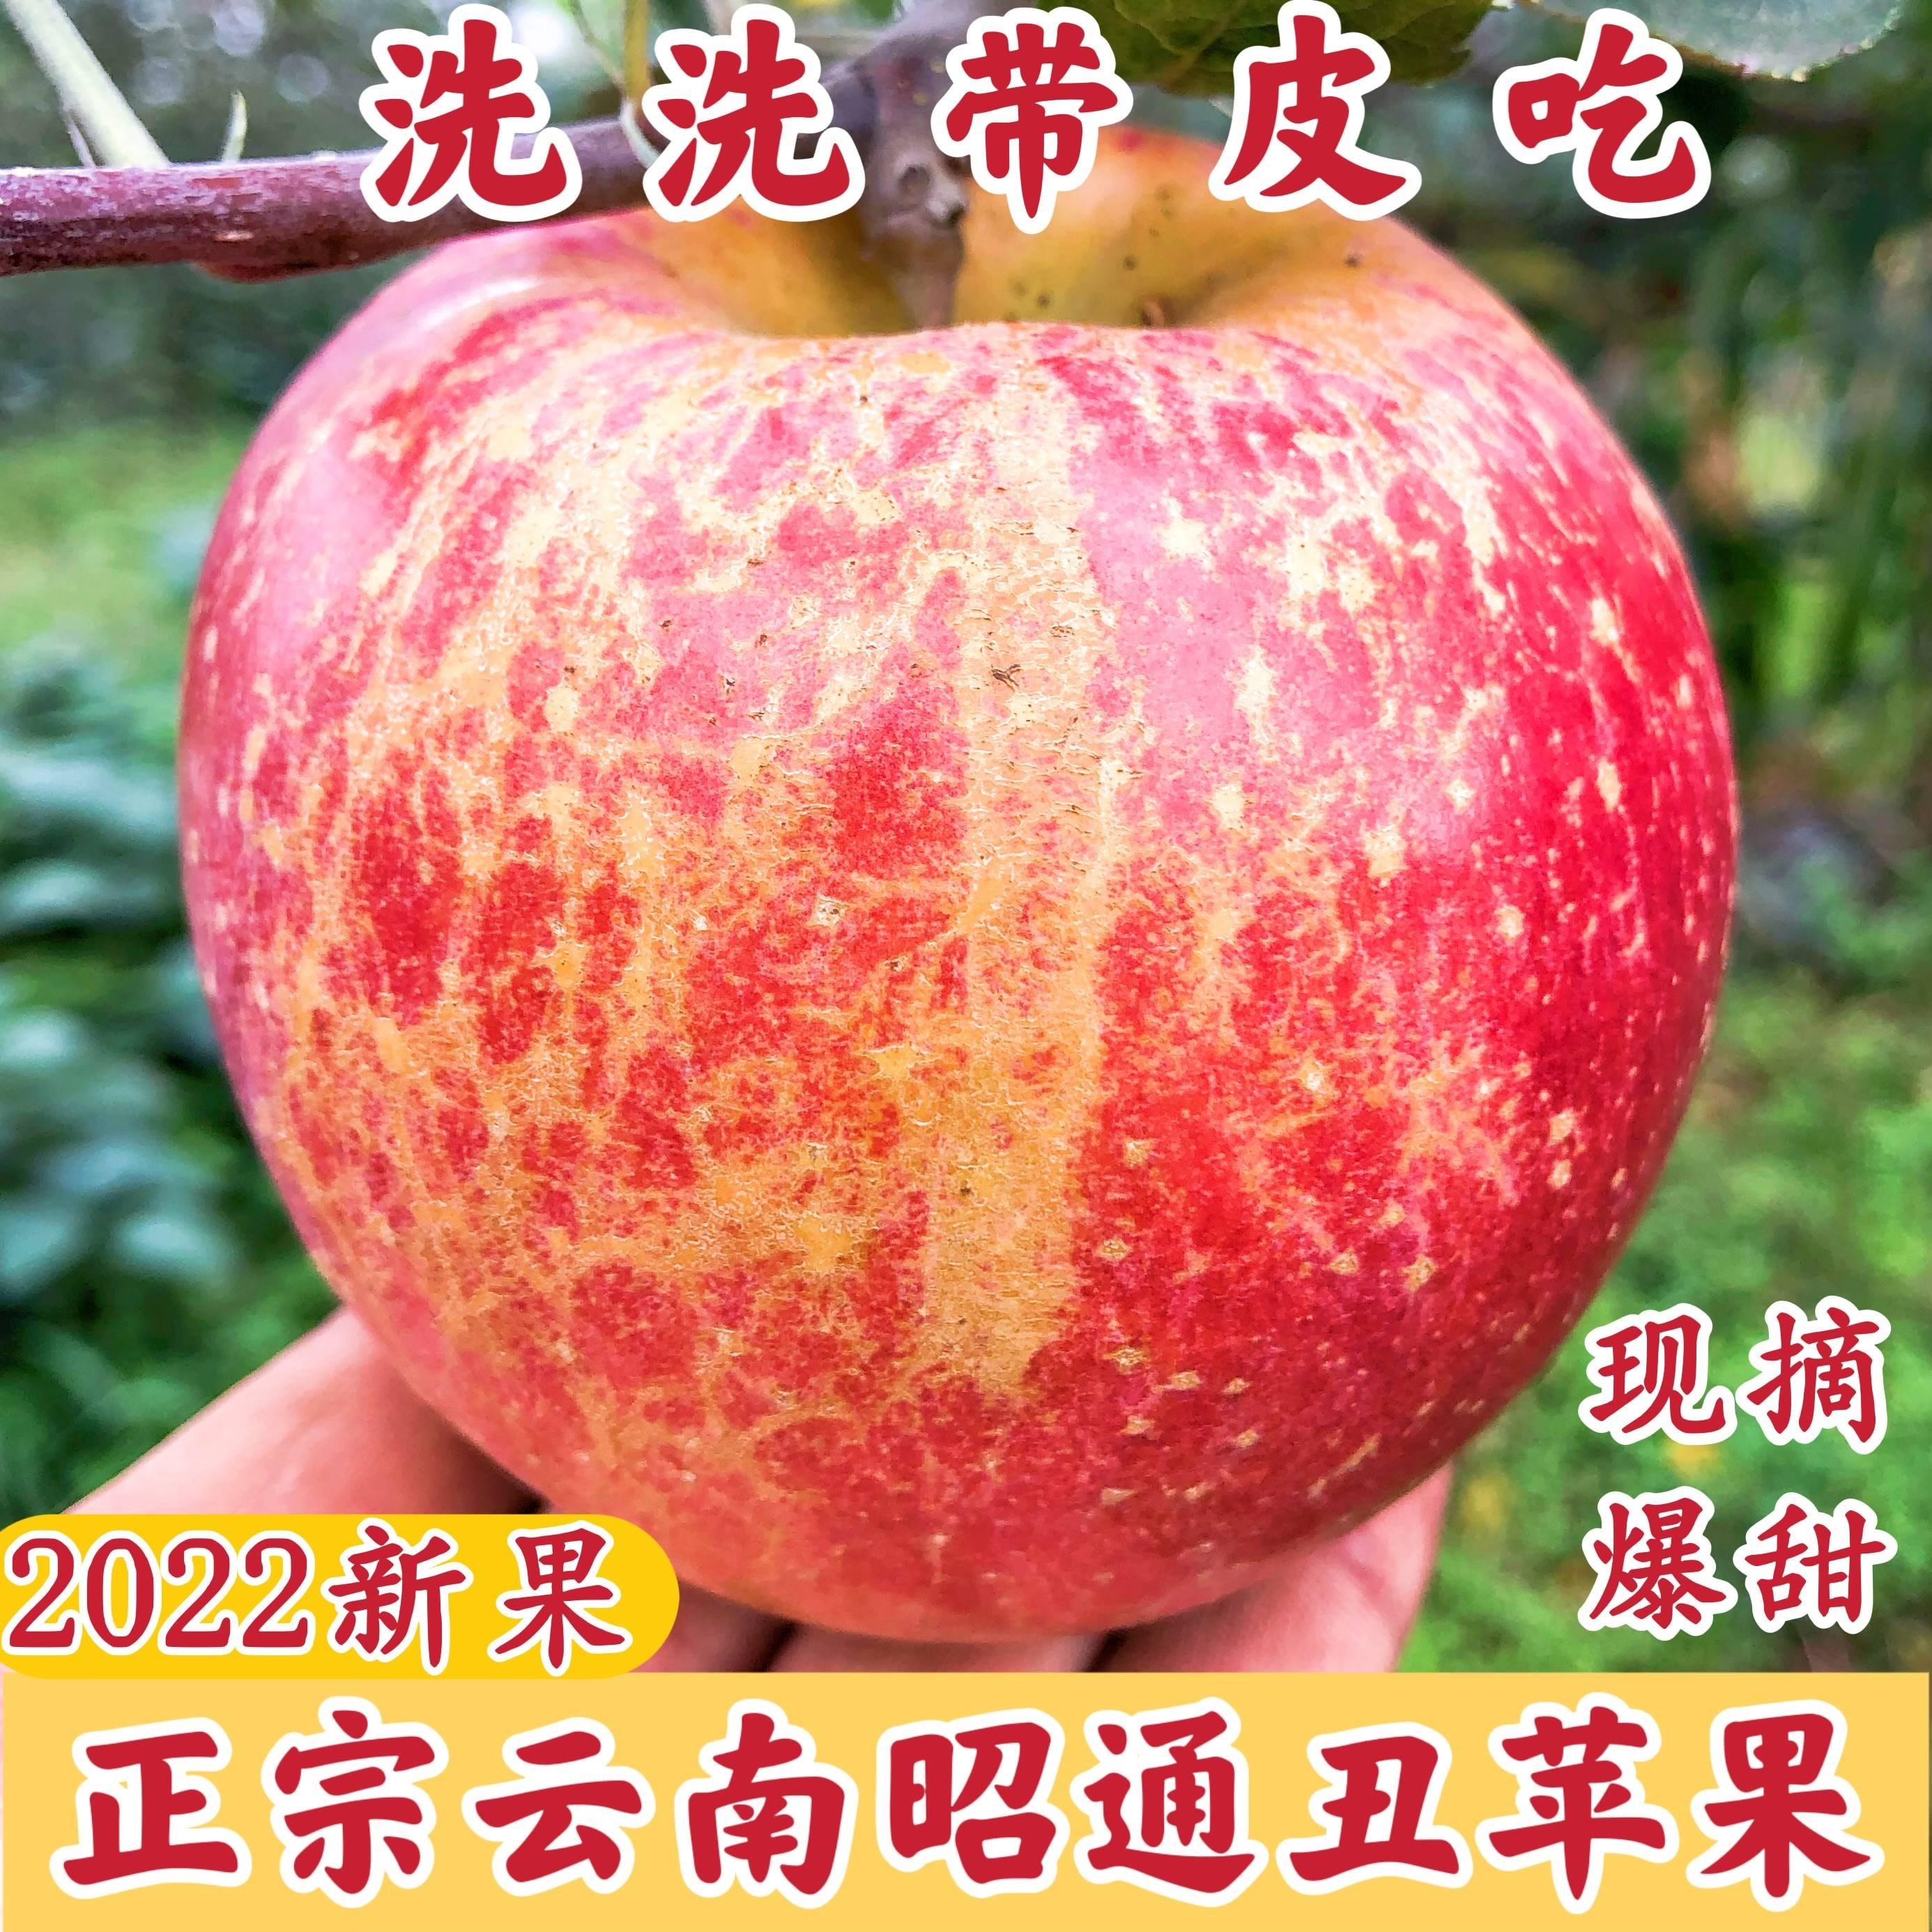 云南昭通苹果水果新鲜当季红富士正宗丑平萍果冰糖心整箱10斤